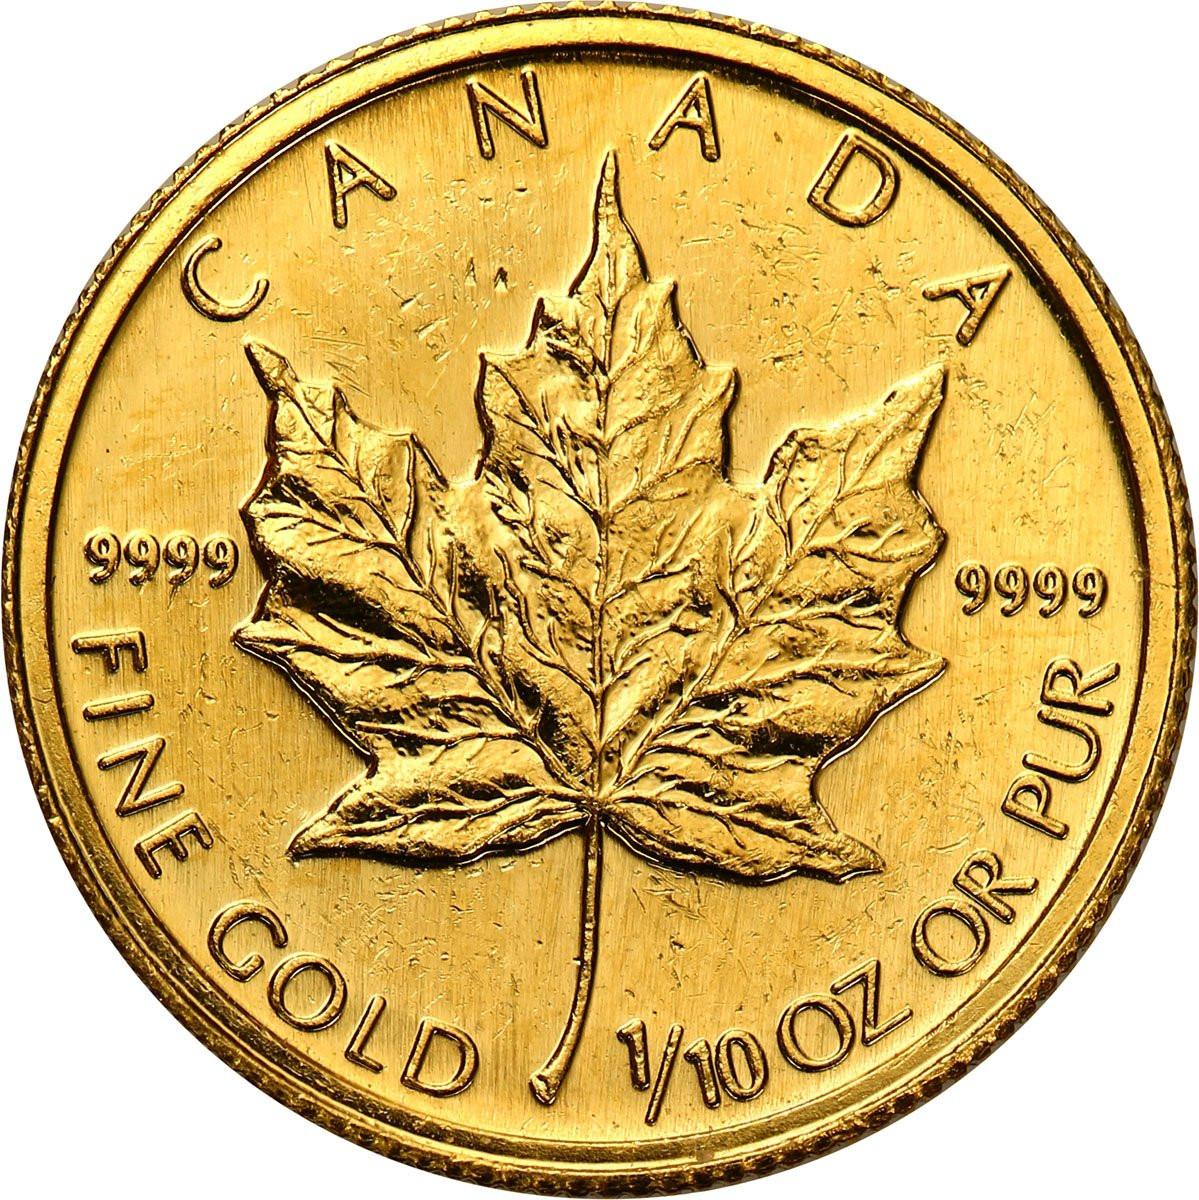 Kanada 5 dolarów 1991 liść klonowy 1/10 uncji złota